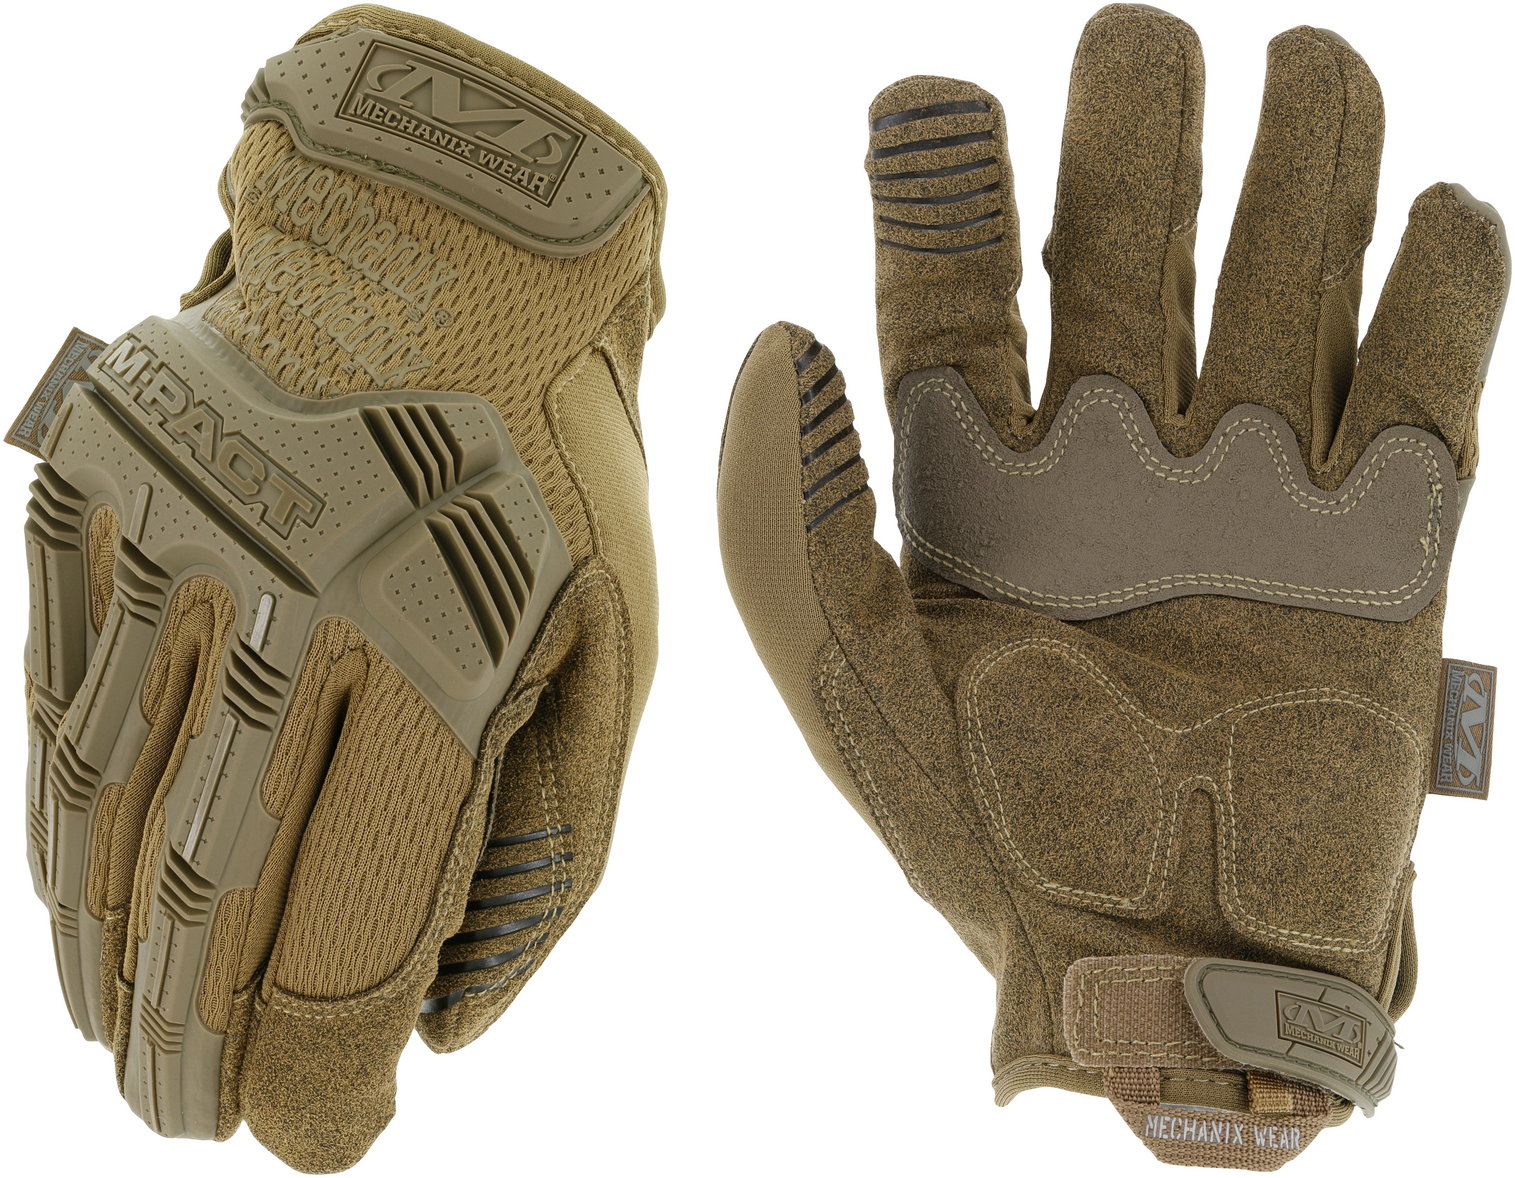 M-pact Glove - KRMX-MPT-72-011